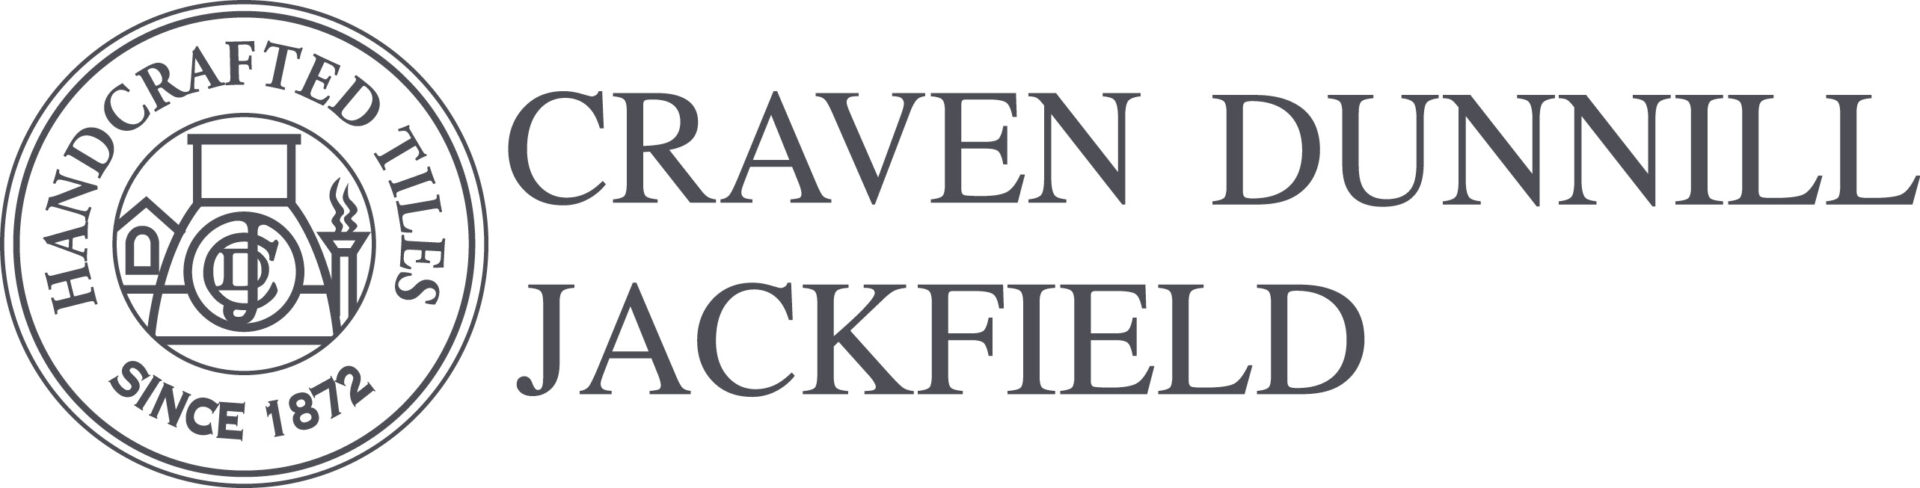 Craven Dunnill Jackfield Ltd